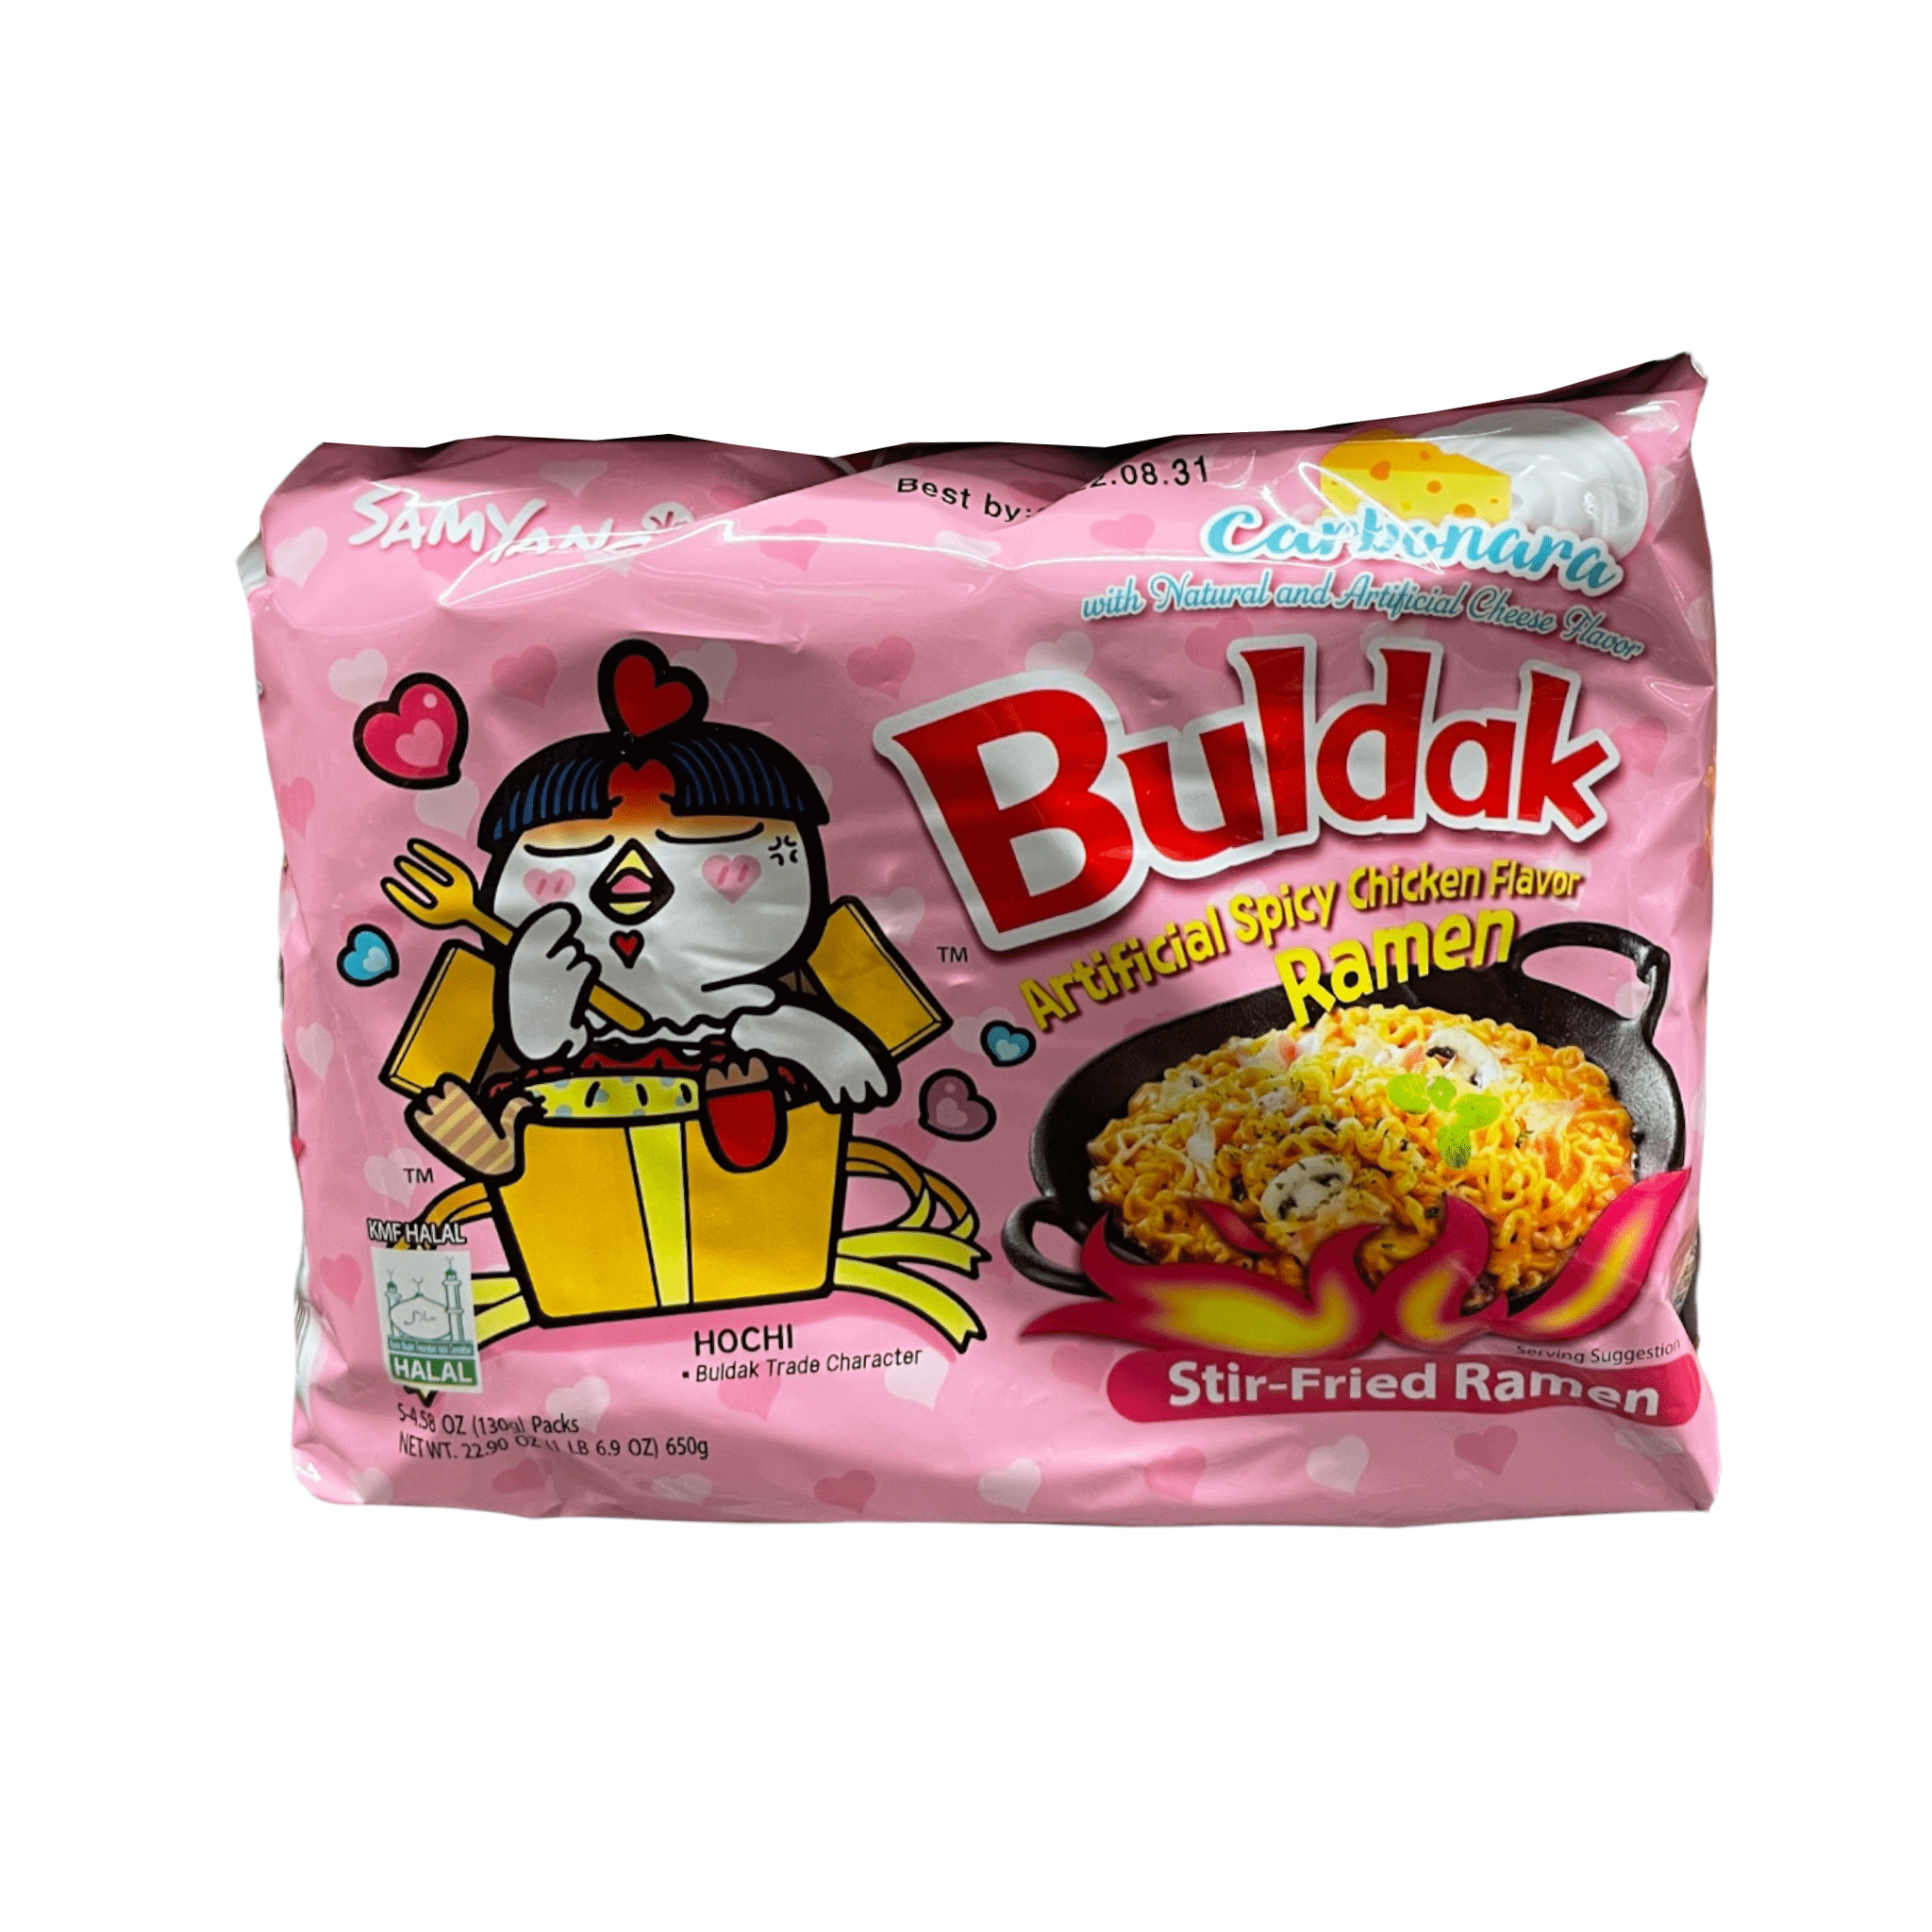 Samyang Buldak Ramen Carbonara Hot Chicken Flavor | 5 Pack